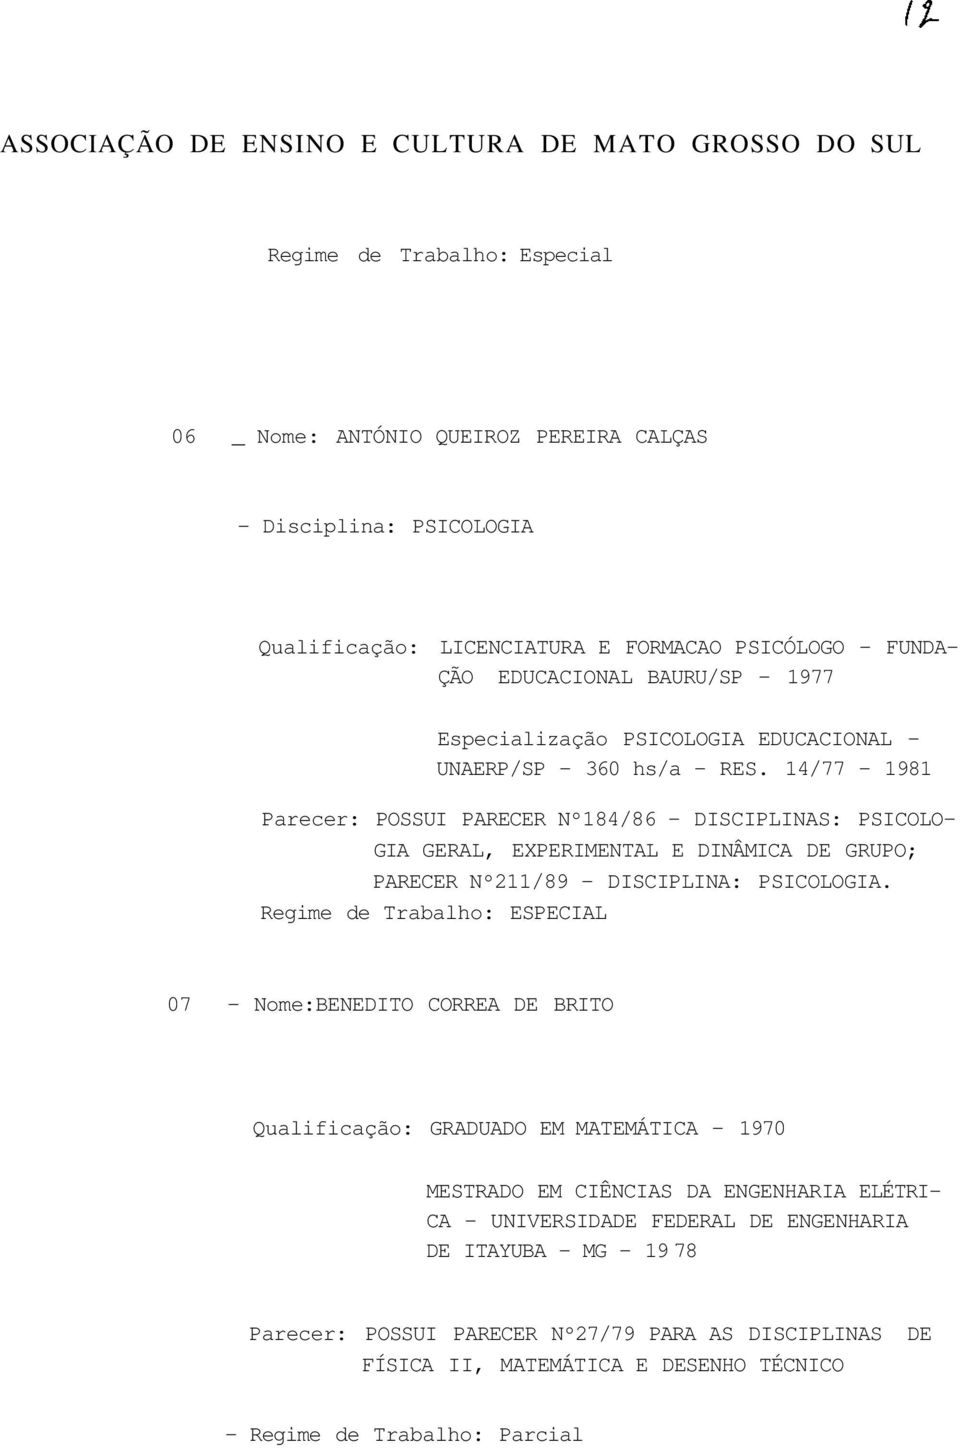 14/77-1981 Parecer: POSSUI PARECER Nº184/86 - DISCIPLINAS: PSICOLO GIA GERAL, EXPERIMENTAL E DINÂMICA DE GRUPO; PARECER Nº211/89 - DISCIPLINA: PSICOLOGIA.